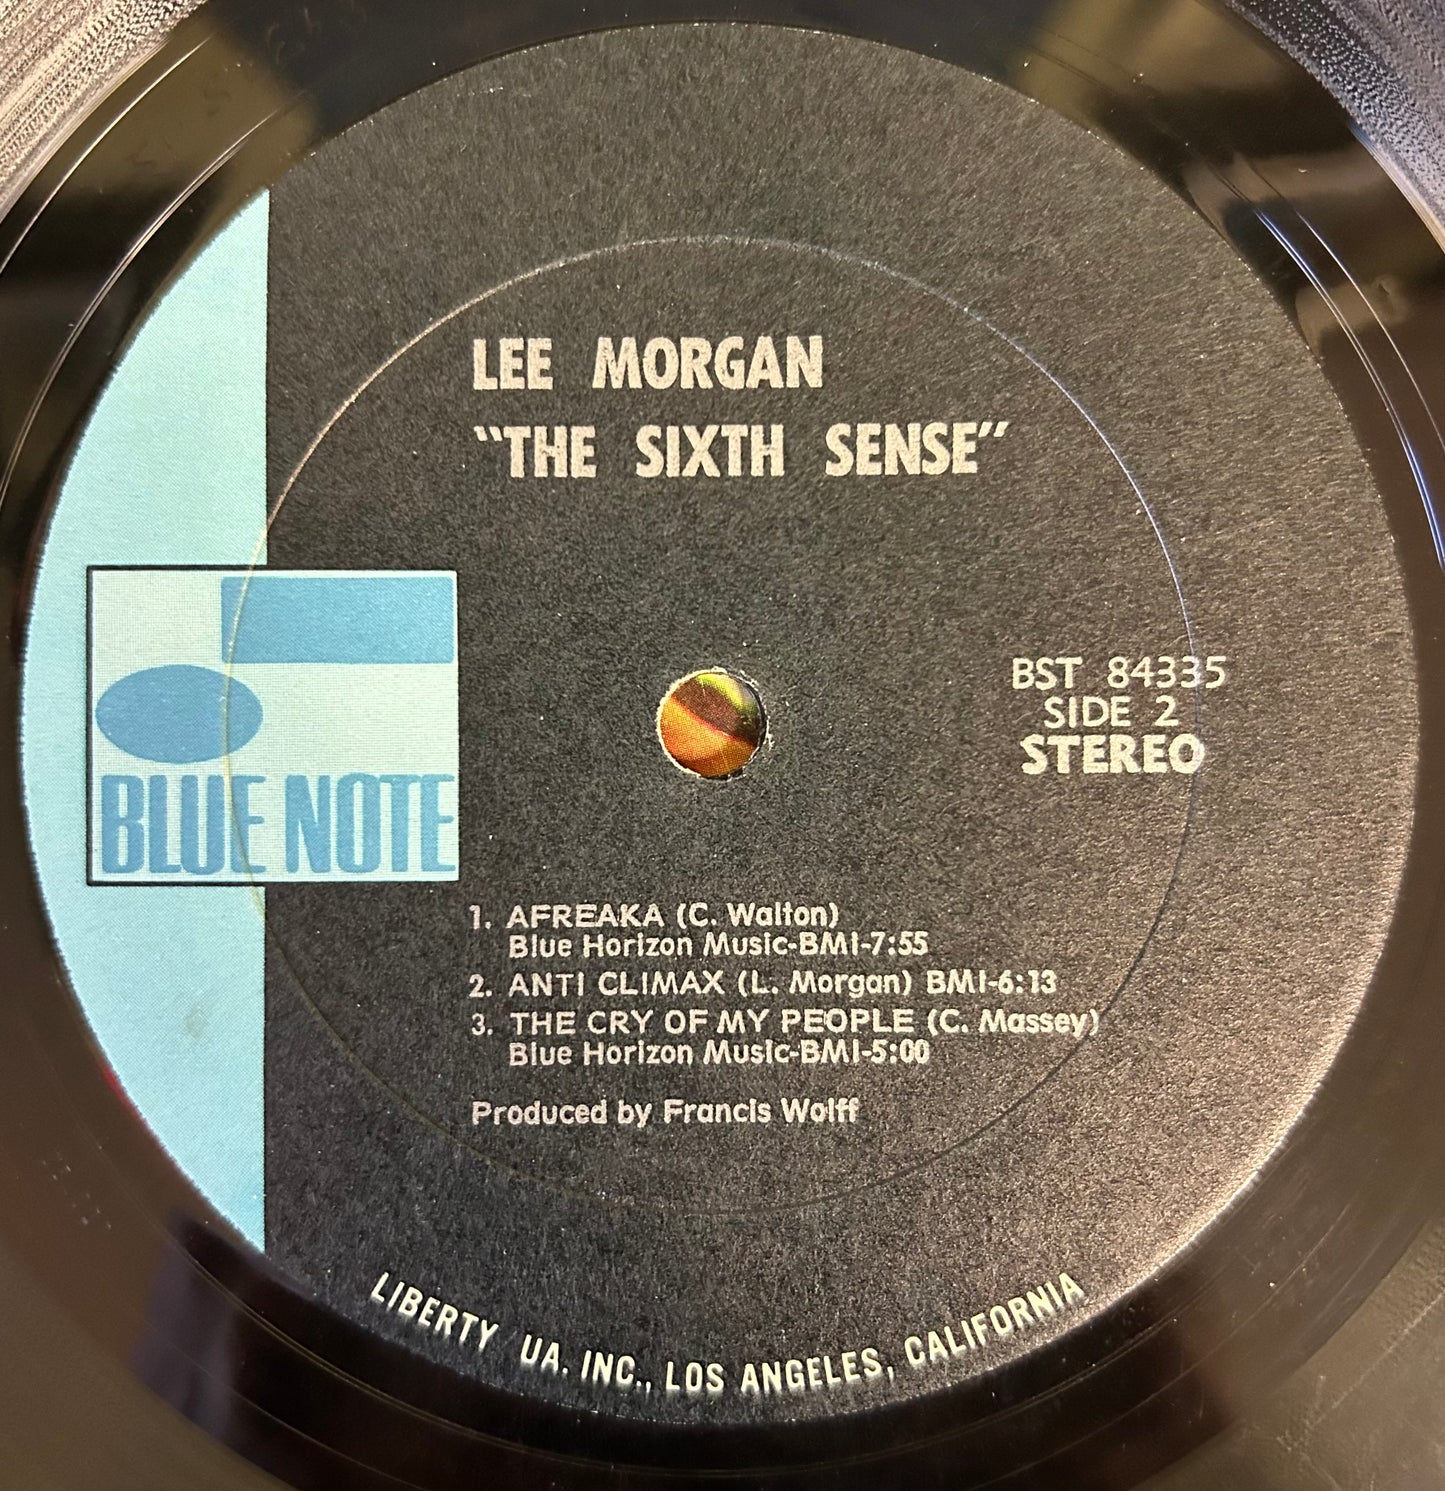 Lee Morgan - The Sixth Sense 2nd Press 1970 UA Van Gelder Black/Blue